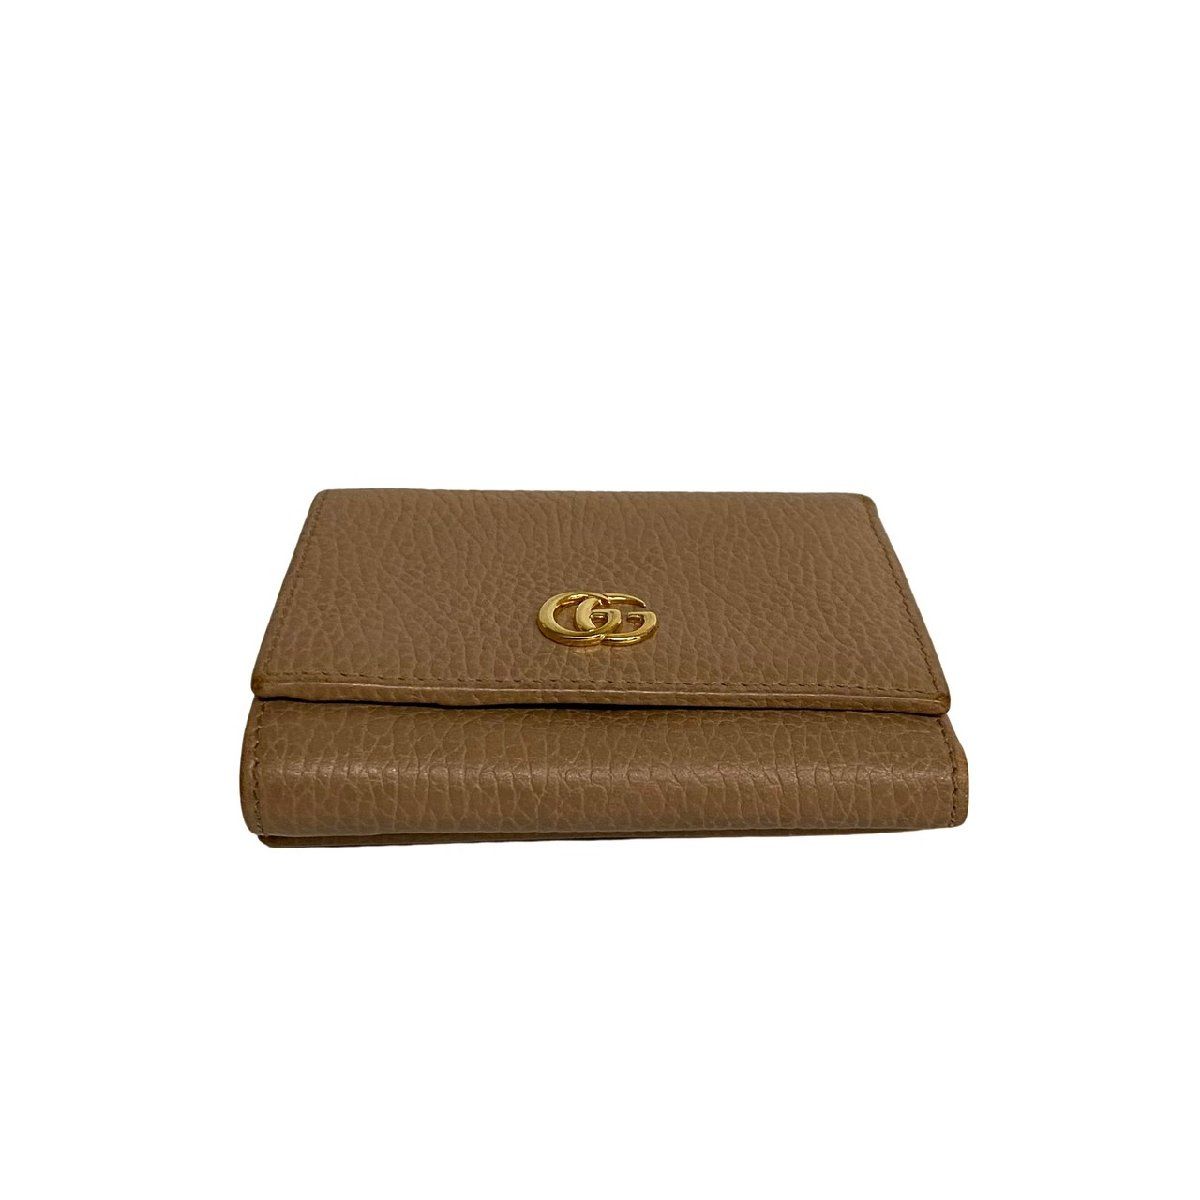 GUCCI品番美品 グッチ 三つ折り財布 コンパクトウォレット 黒 GG プチマーモント 財布